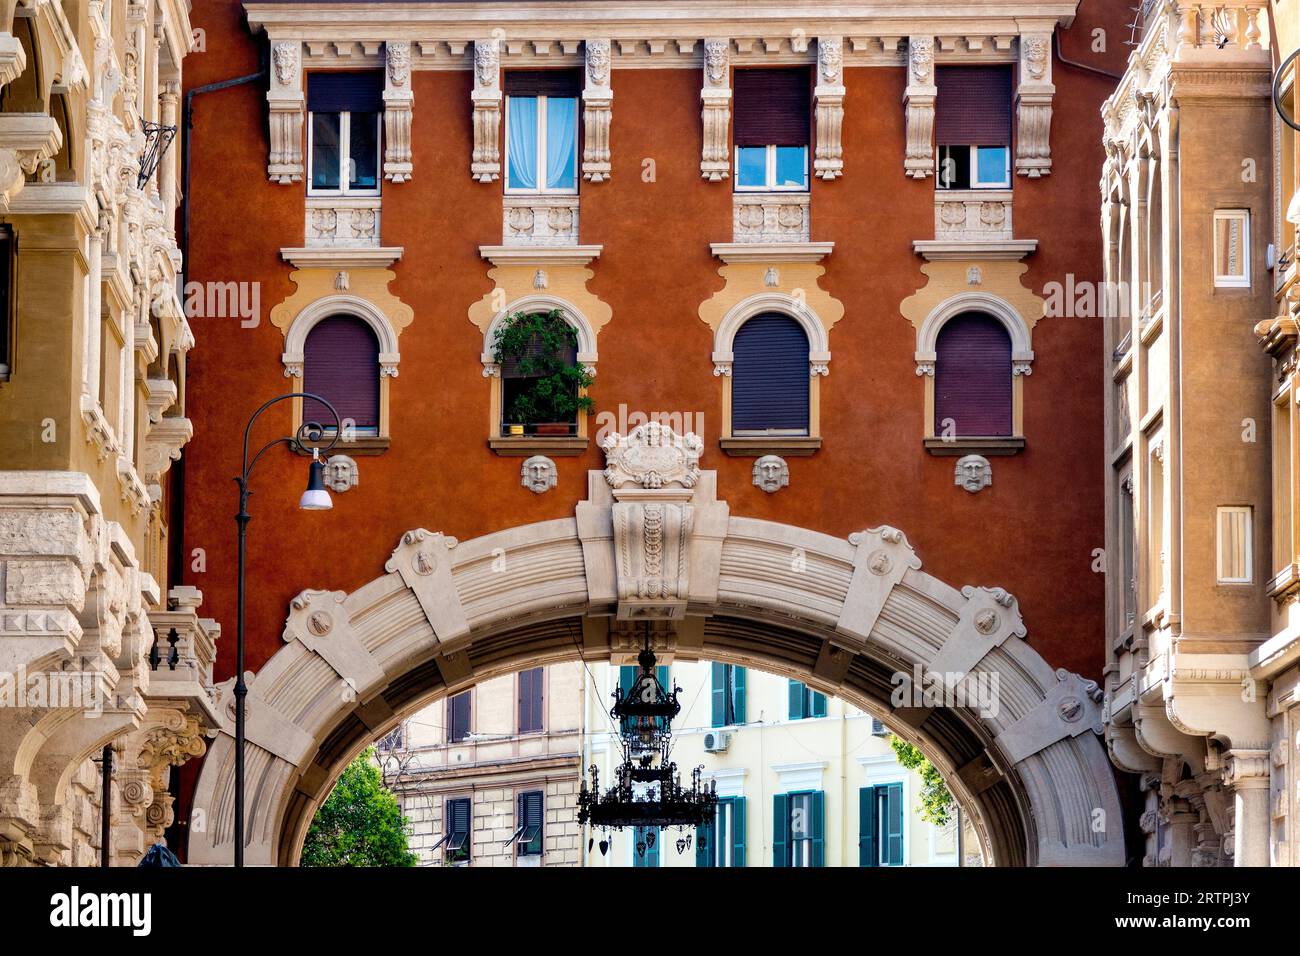 Detail of the Palazzo degli Ambasciatori in the Quartiere Coppedè, Rome, Italy Stock Photo